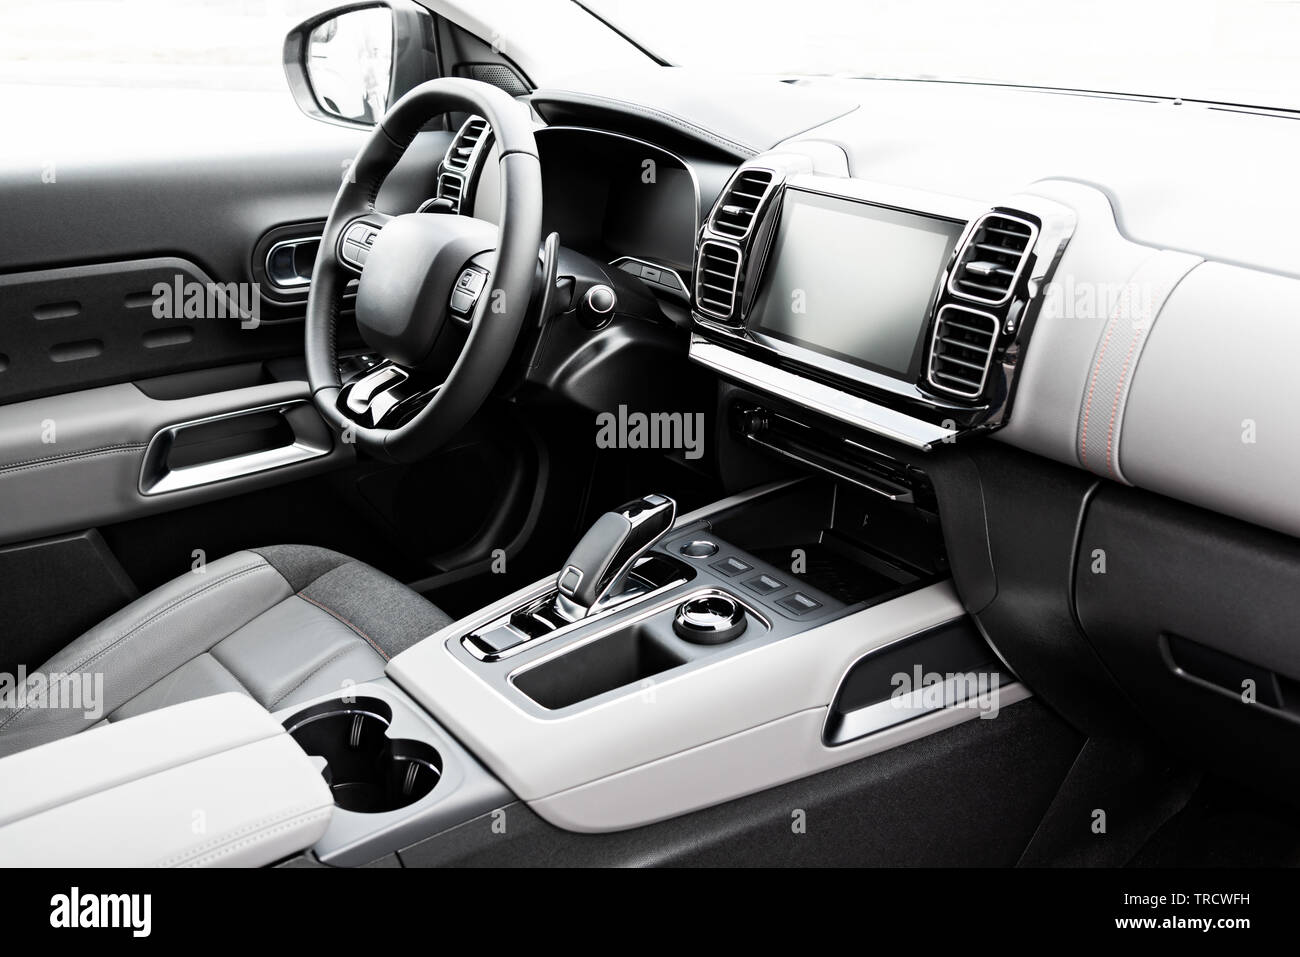 Auto Armaturenbrett moderne Automobil Steuern beleuchtete Panel  Geschwindigkeitsanzeige Stockfotografie - Alamy